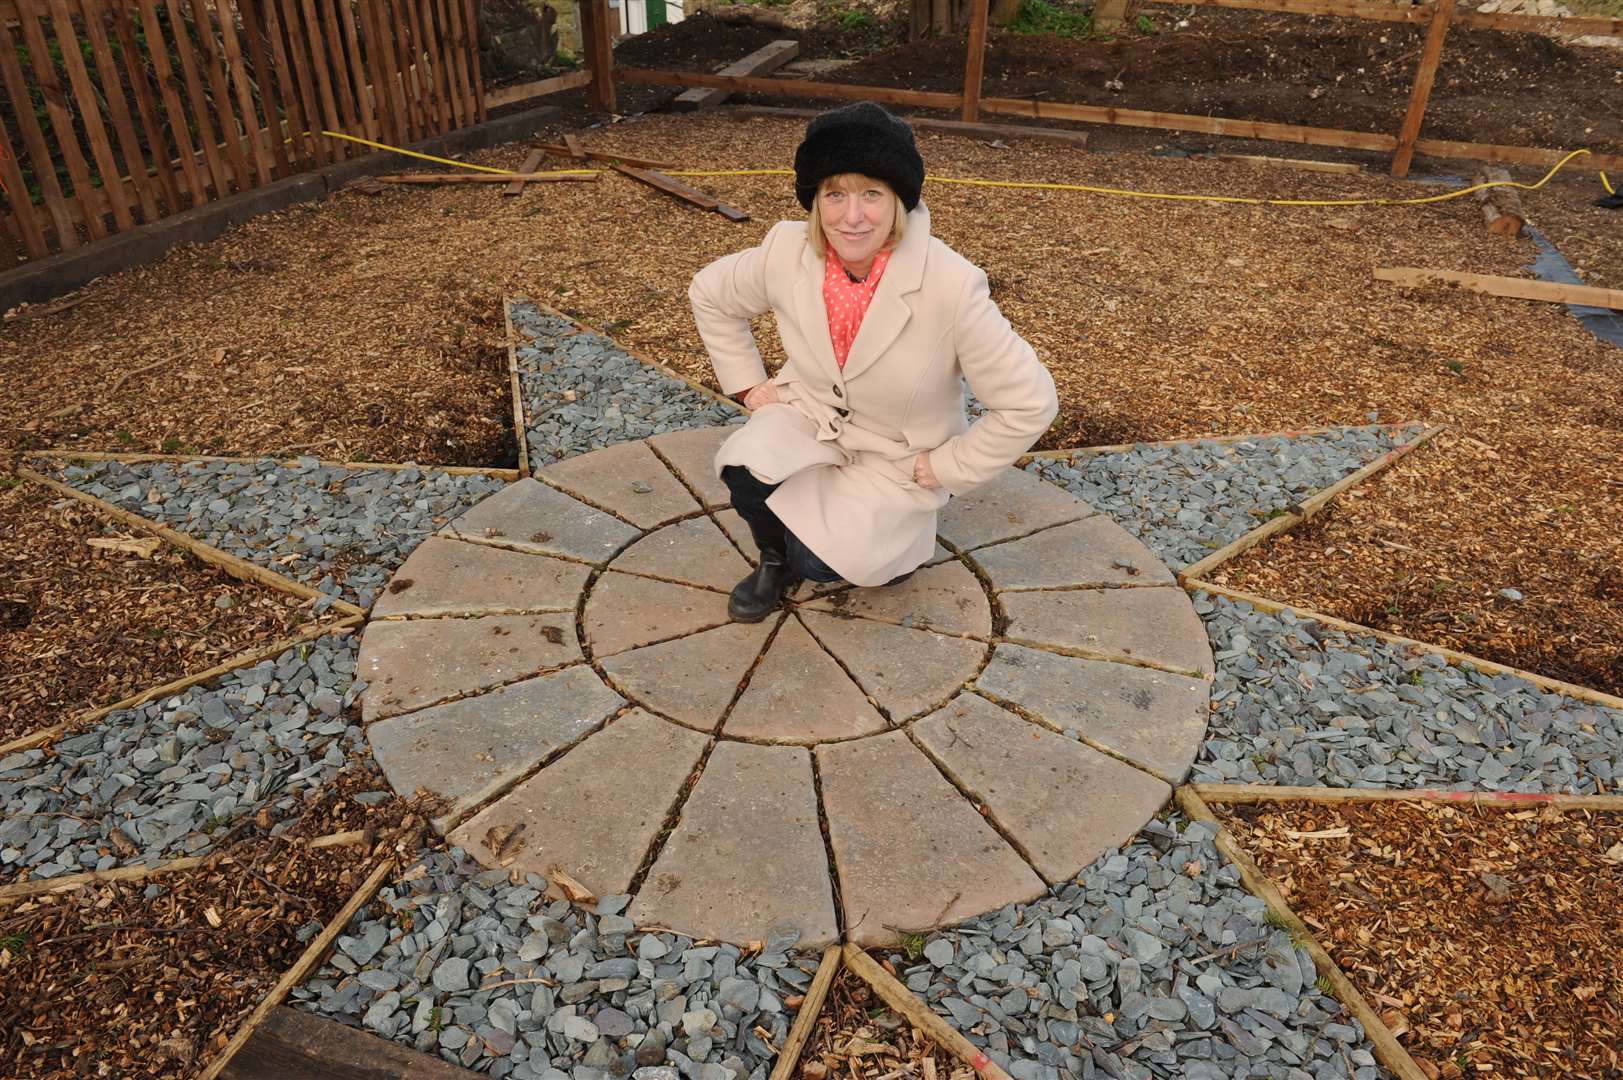 Sally Howells at the memorial garden